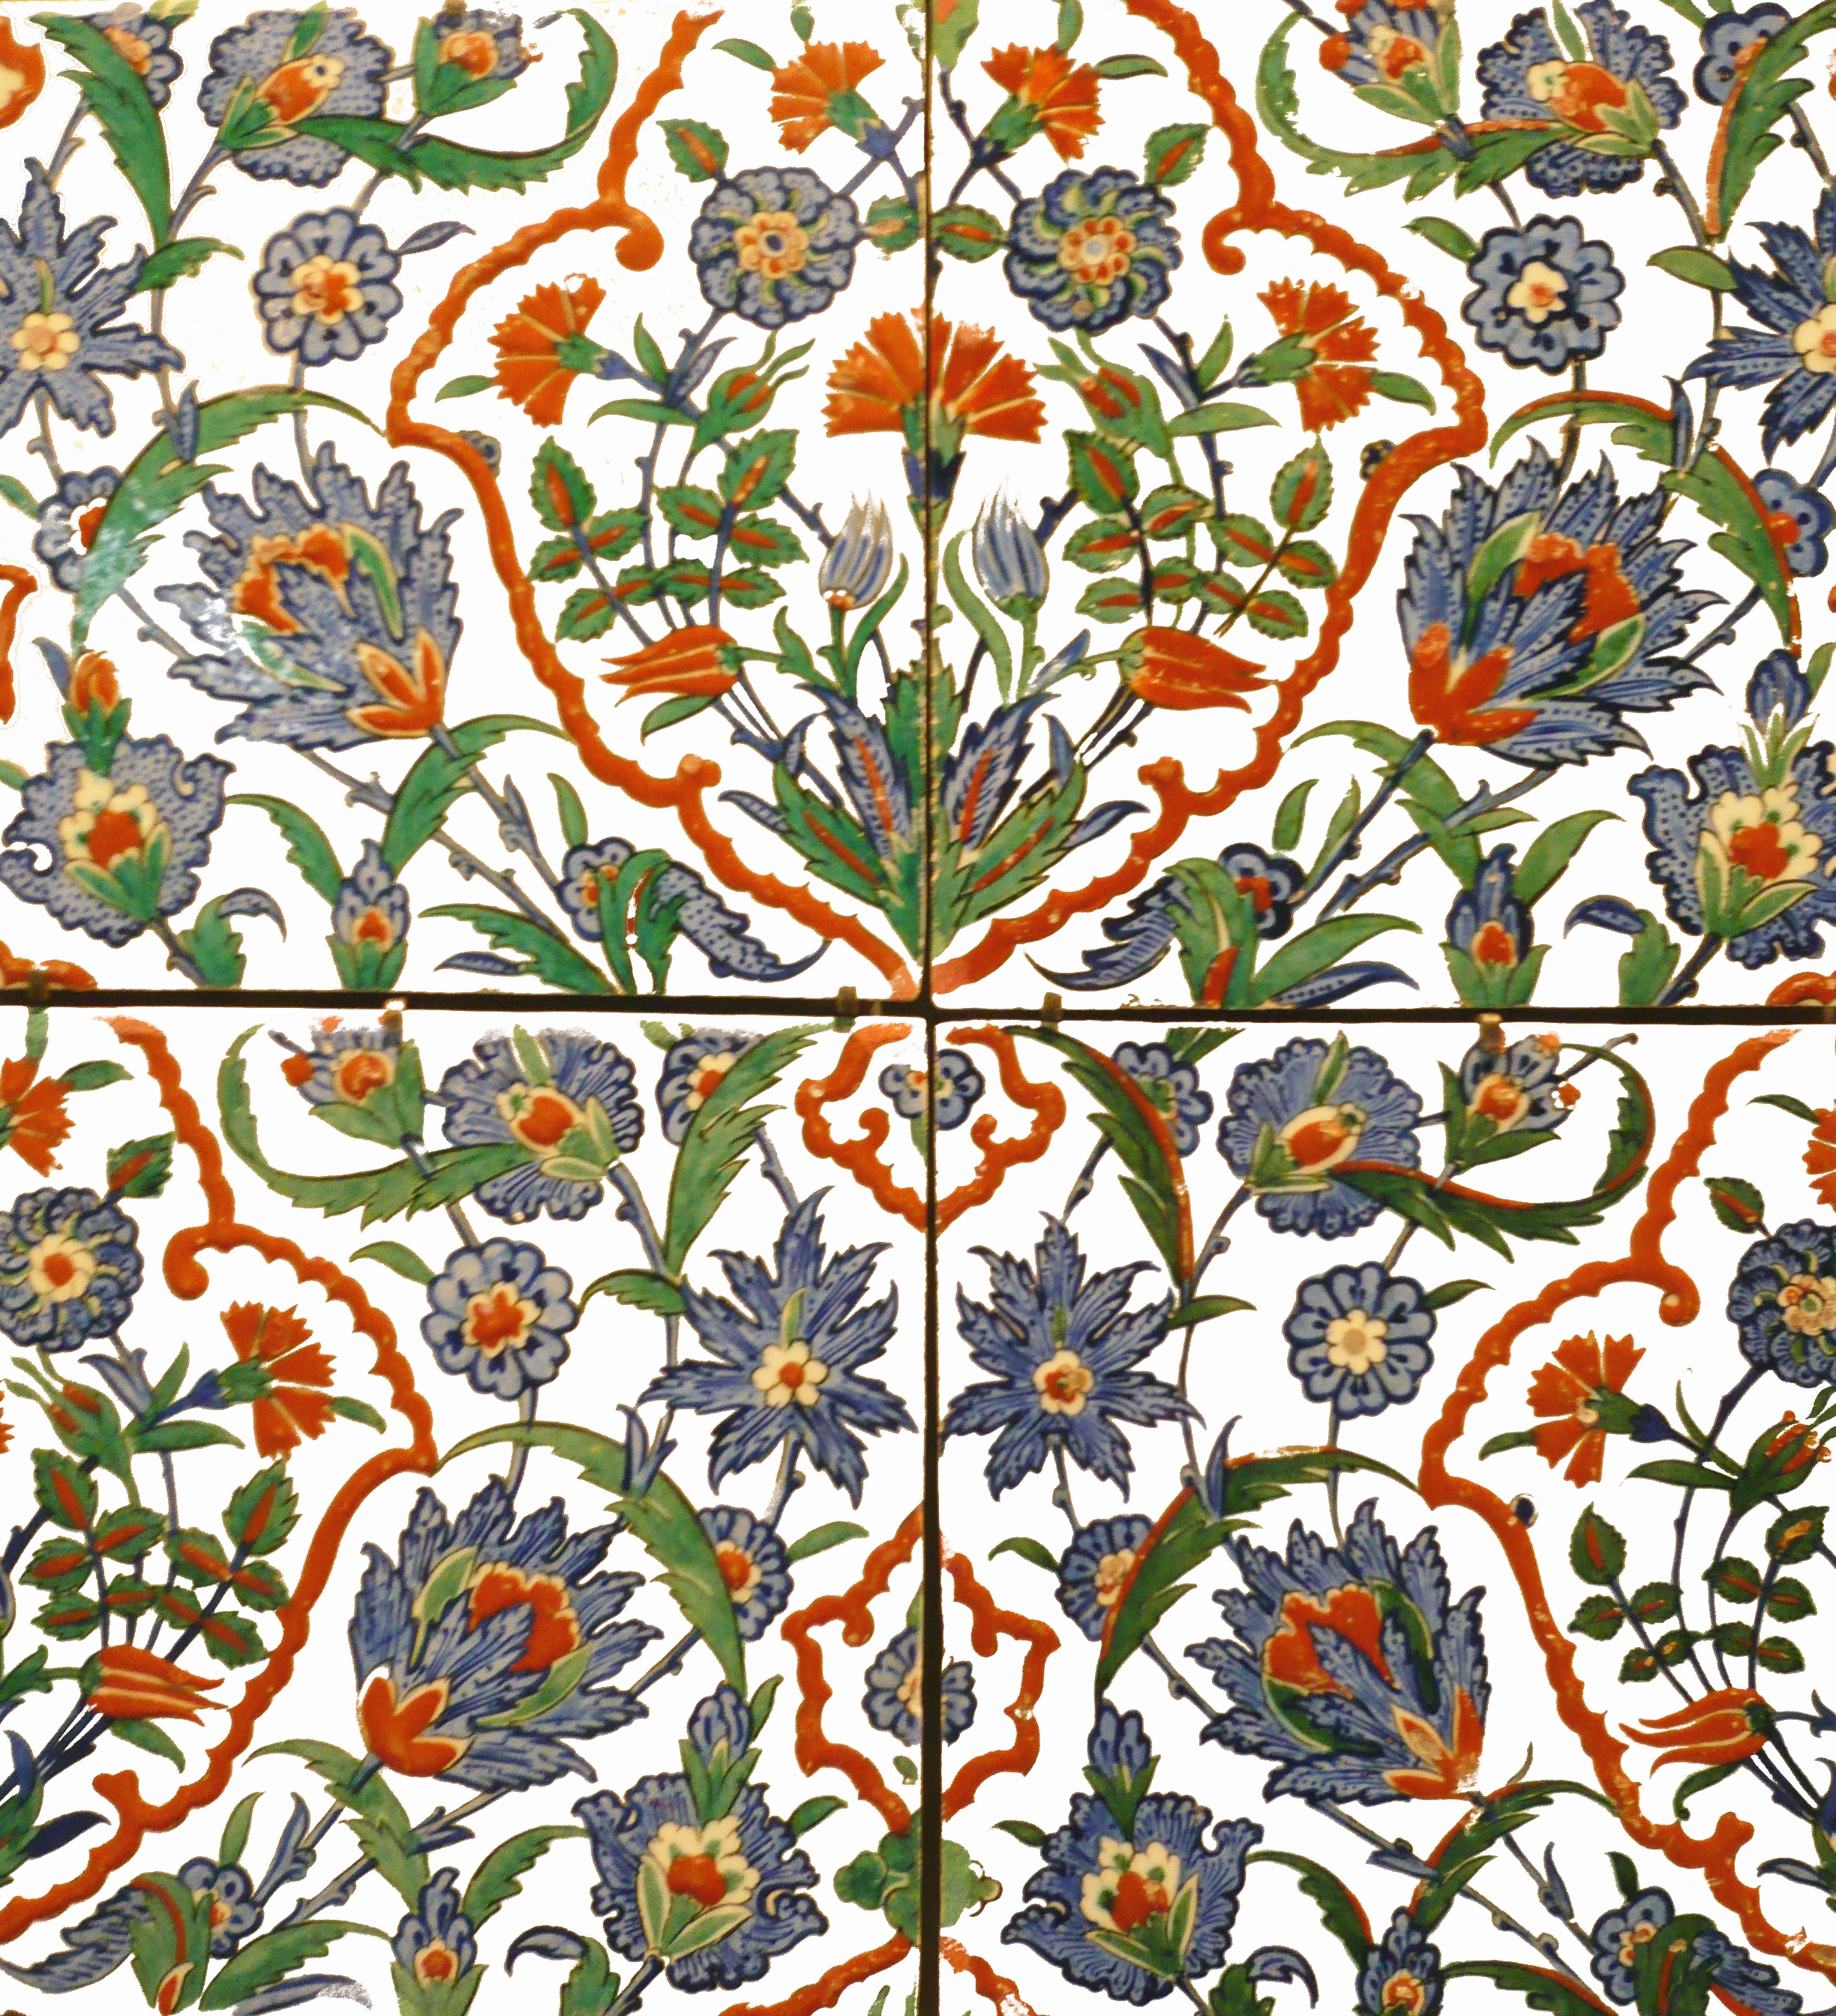 Османская керамическая плитка by Неизвестный Художни - XVI век - 50 x 50 см. 